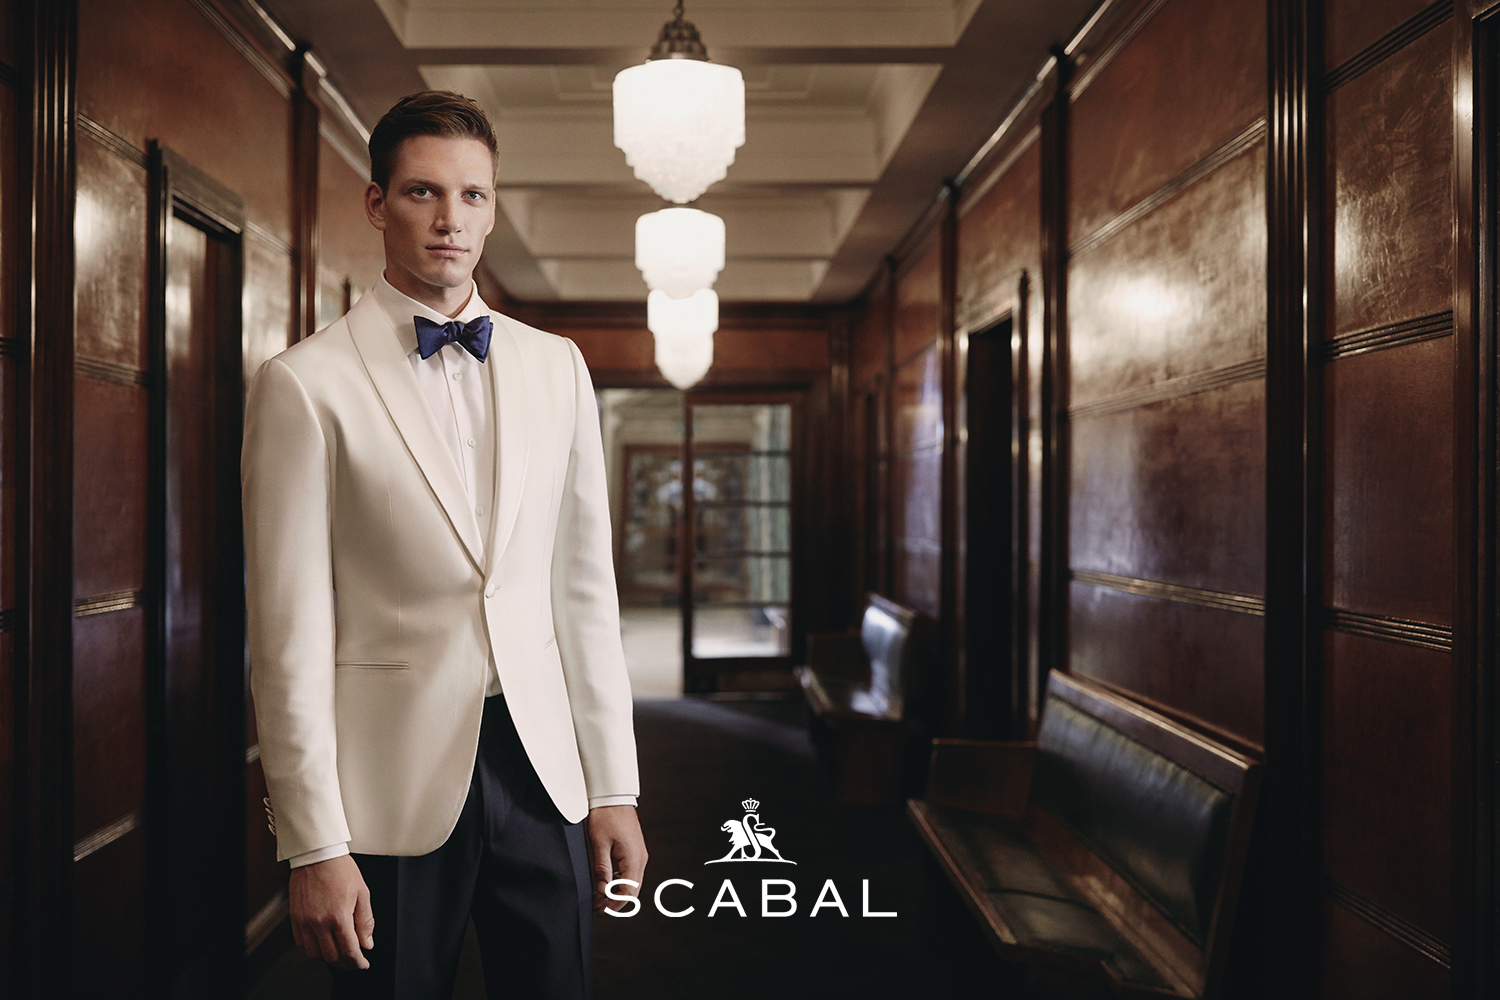 Scabal - hãng vải xa xỉ bậc nhất thế giới